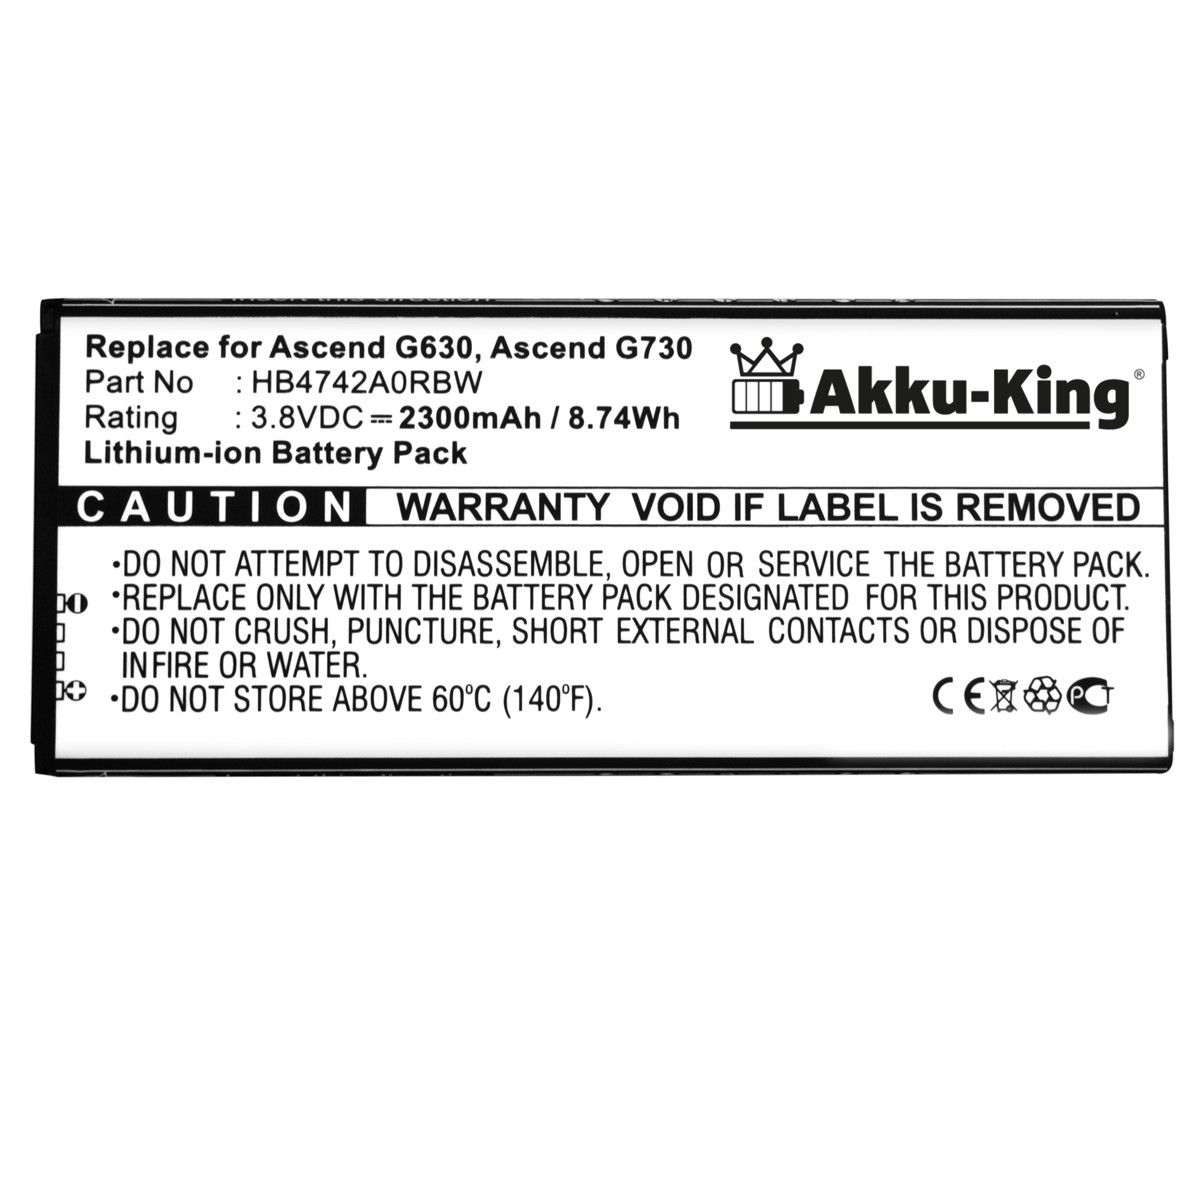 AKKU-KING Akku kompatibel Li-Ion 2300mAh Handy-Akku, Volt, HB4742A0RBC mit Huawei 3.8